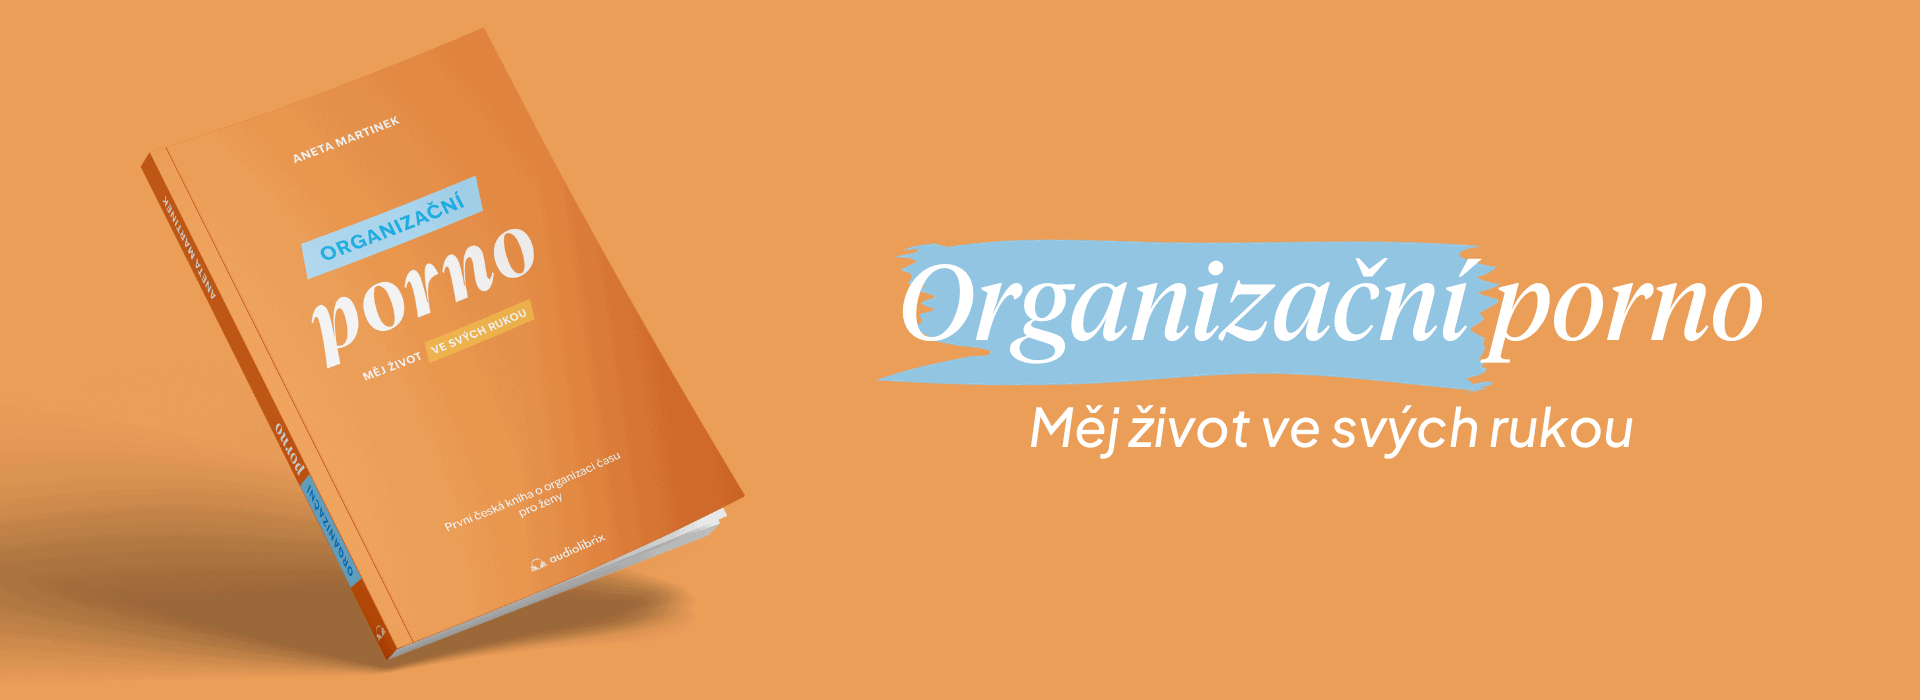 Organizační porno - banner